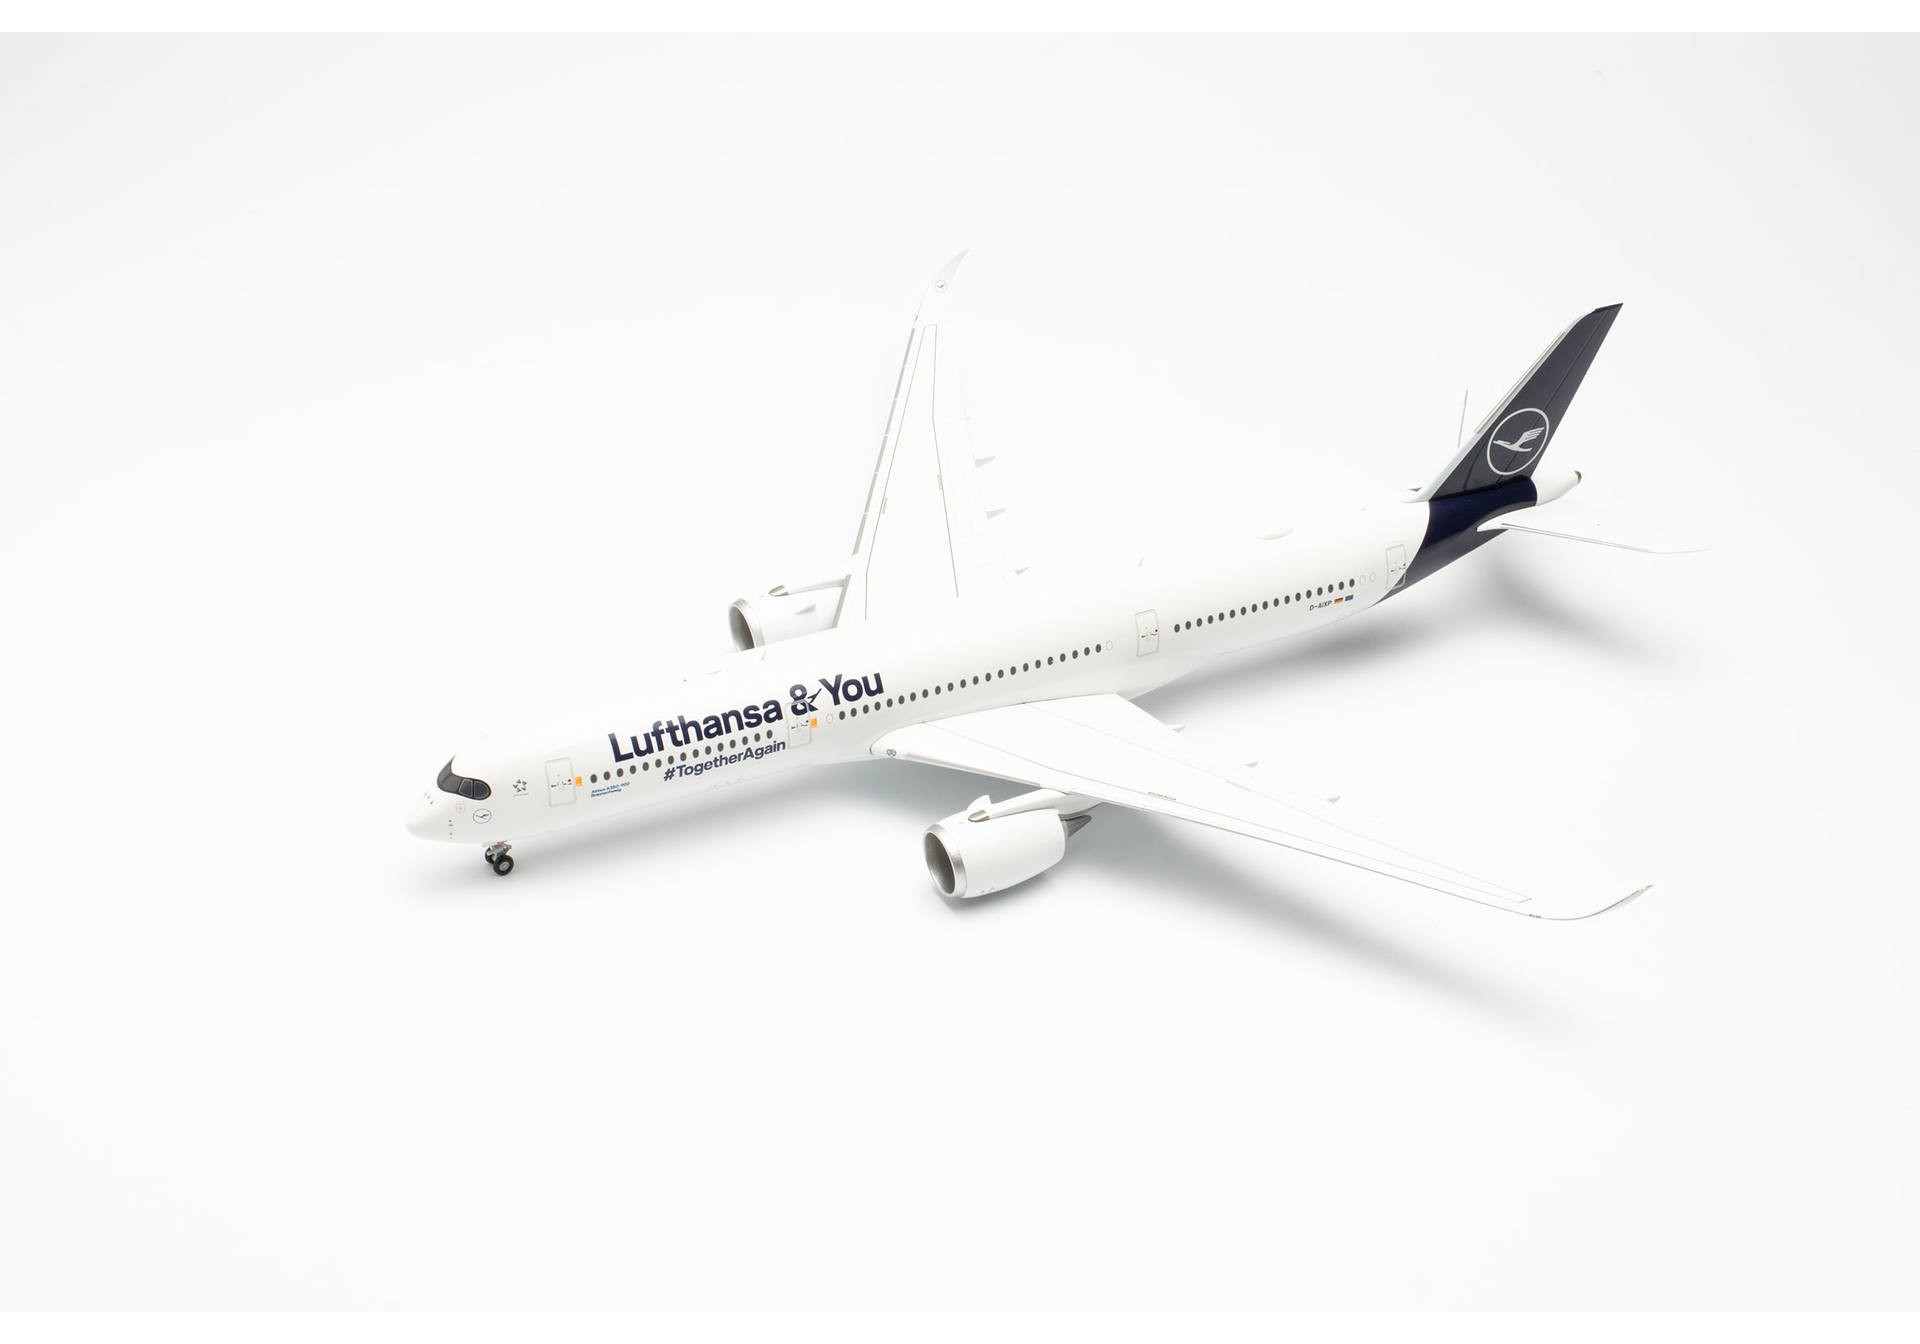 Herpa Wings 572026 Lufthansa Airbus A350 “Lufthansa & You” D-AIXP “Braunschweig” model aircraft 1:200